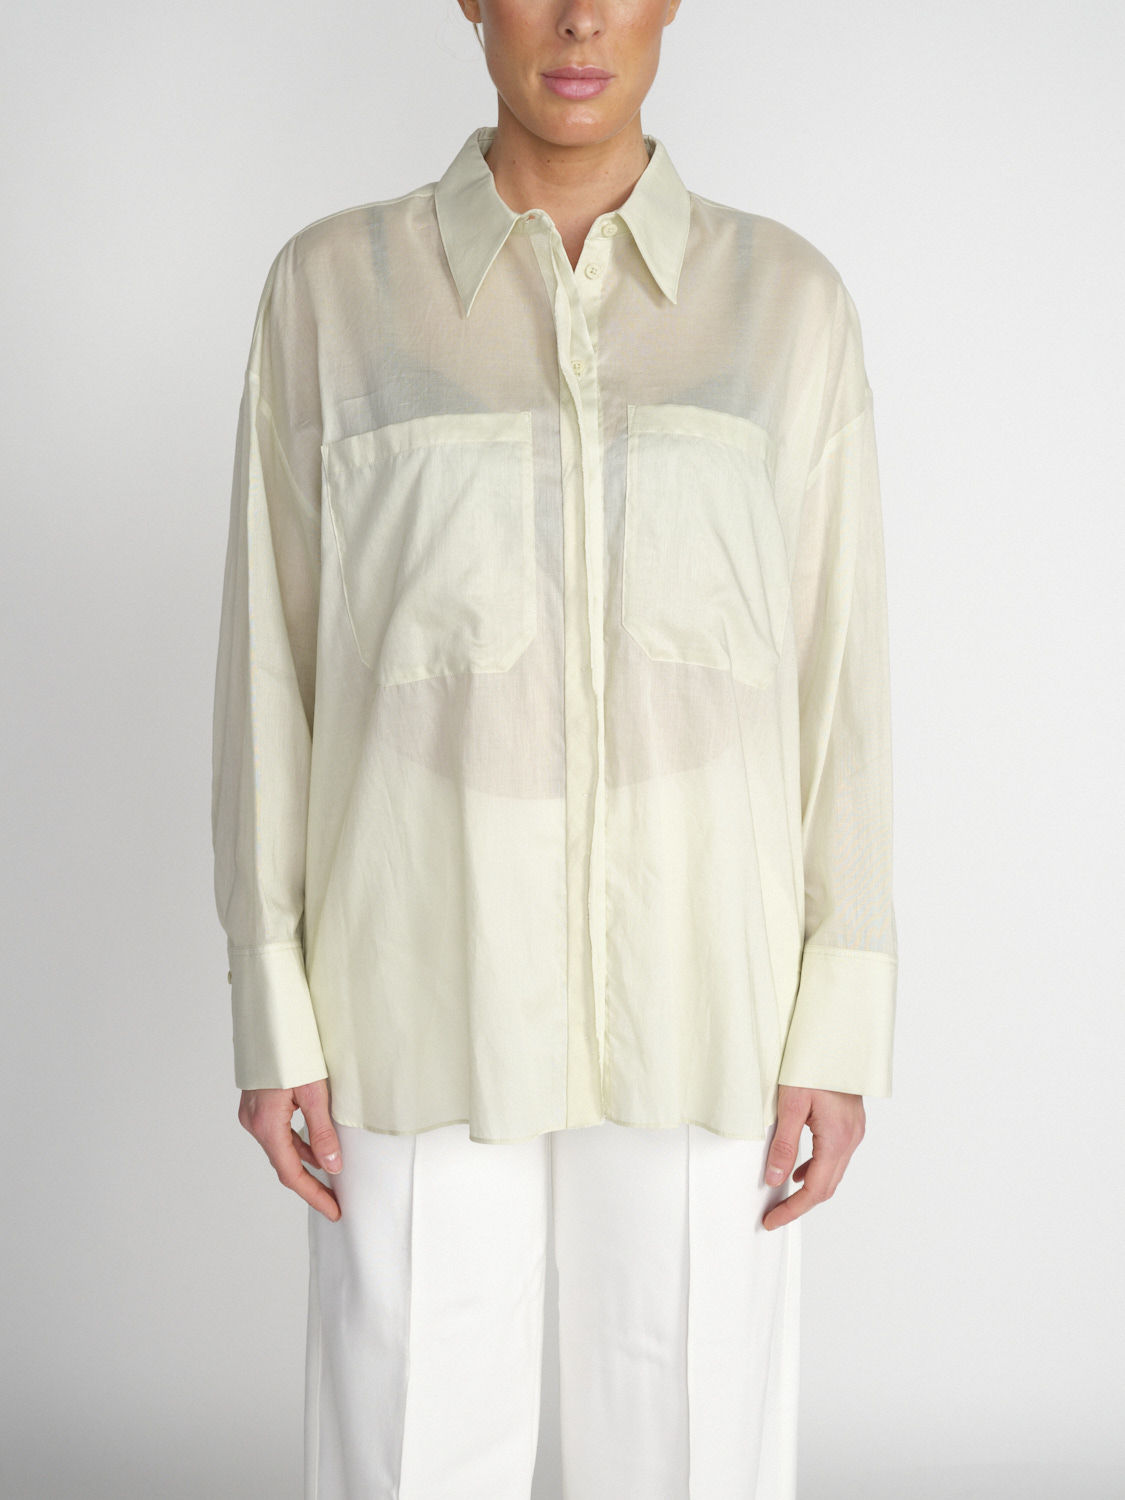 Fantasy - Leicht transparente Bluse aus Baumwolle 	 